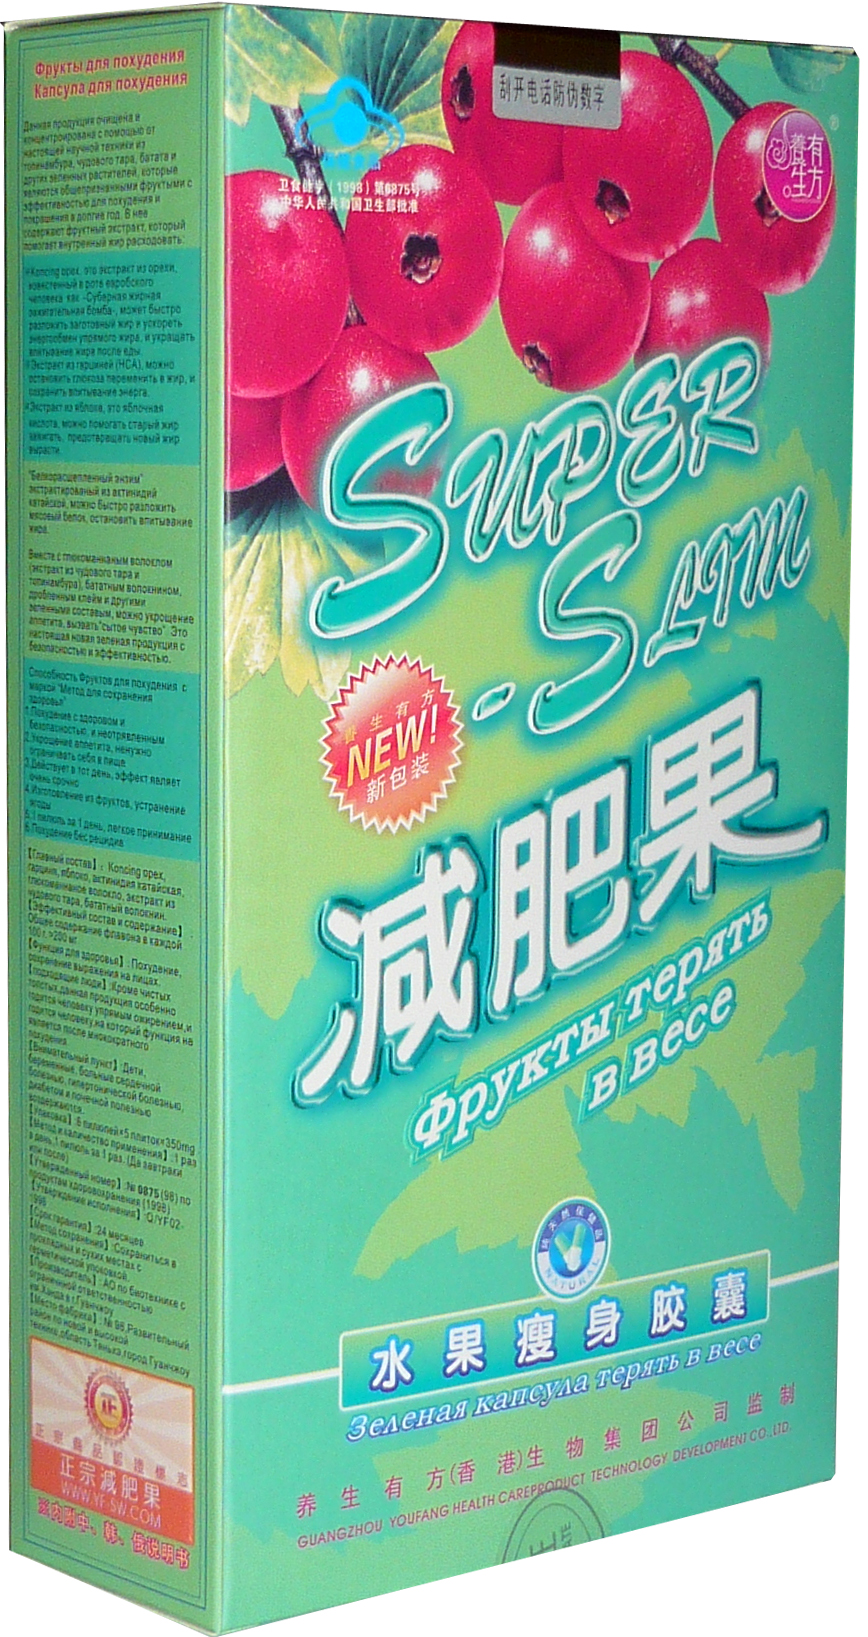 Capsula de slabit, 30 capsule, China | Super Slim